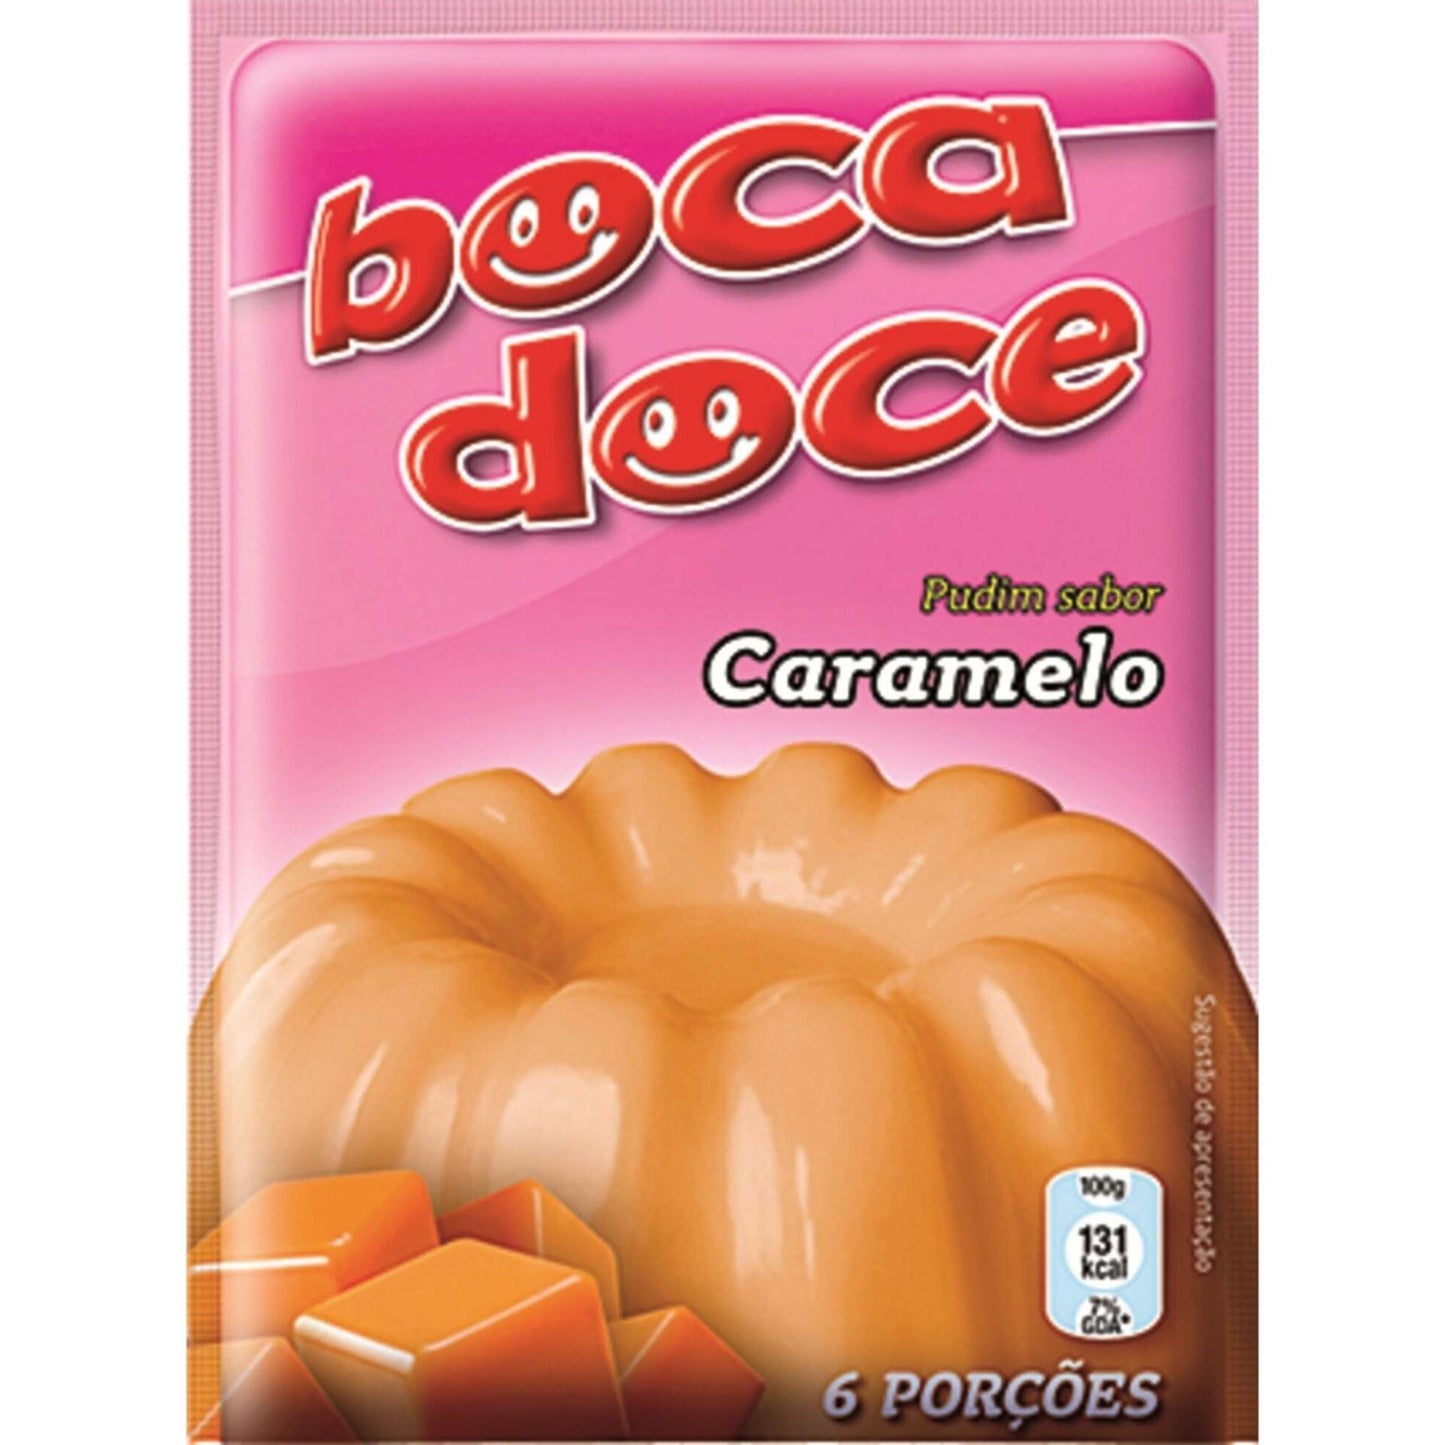 Pudim de caramelo Boca Doce emb. 22 gramas